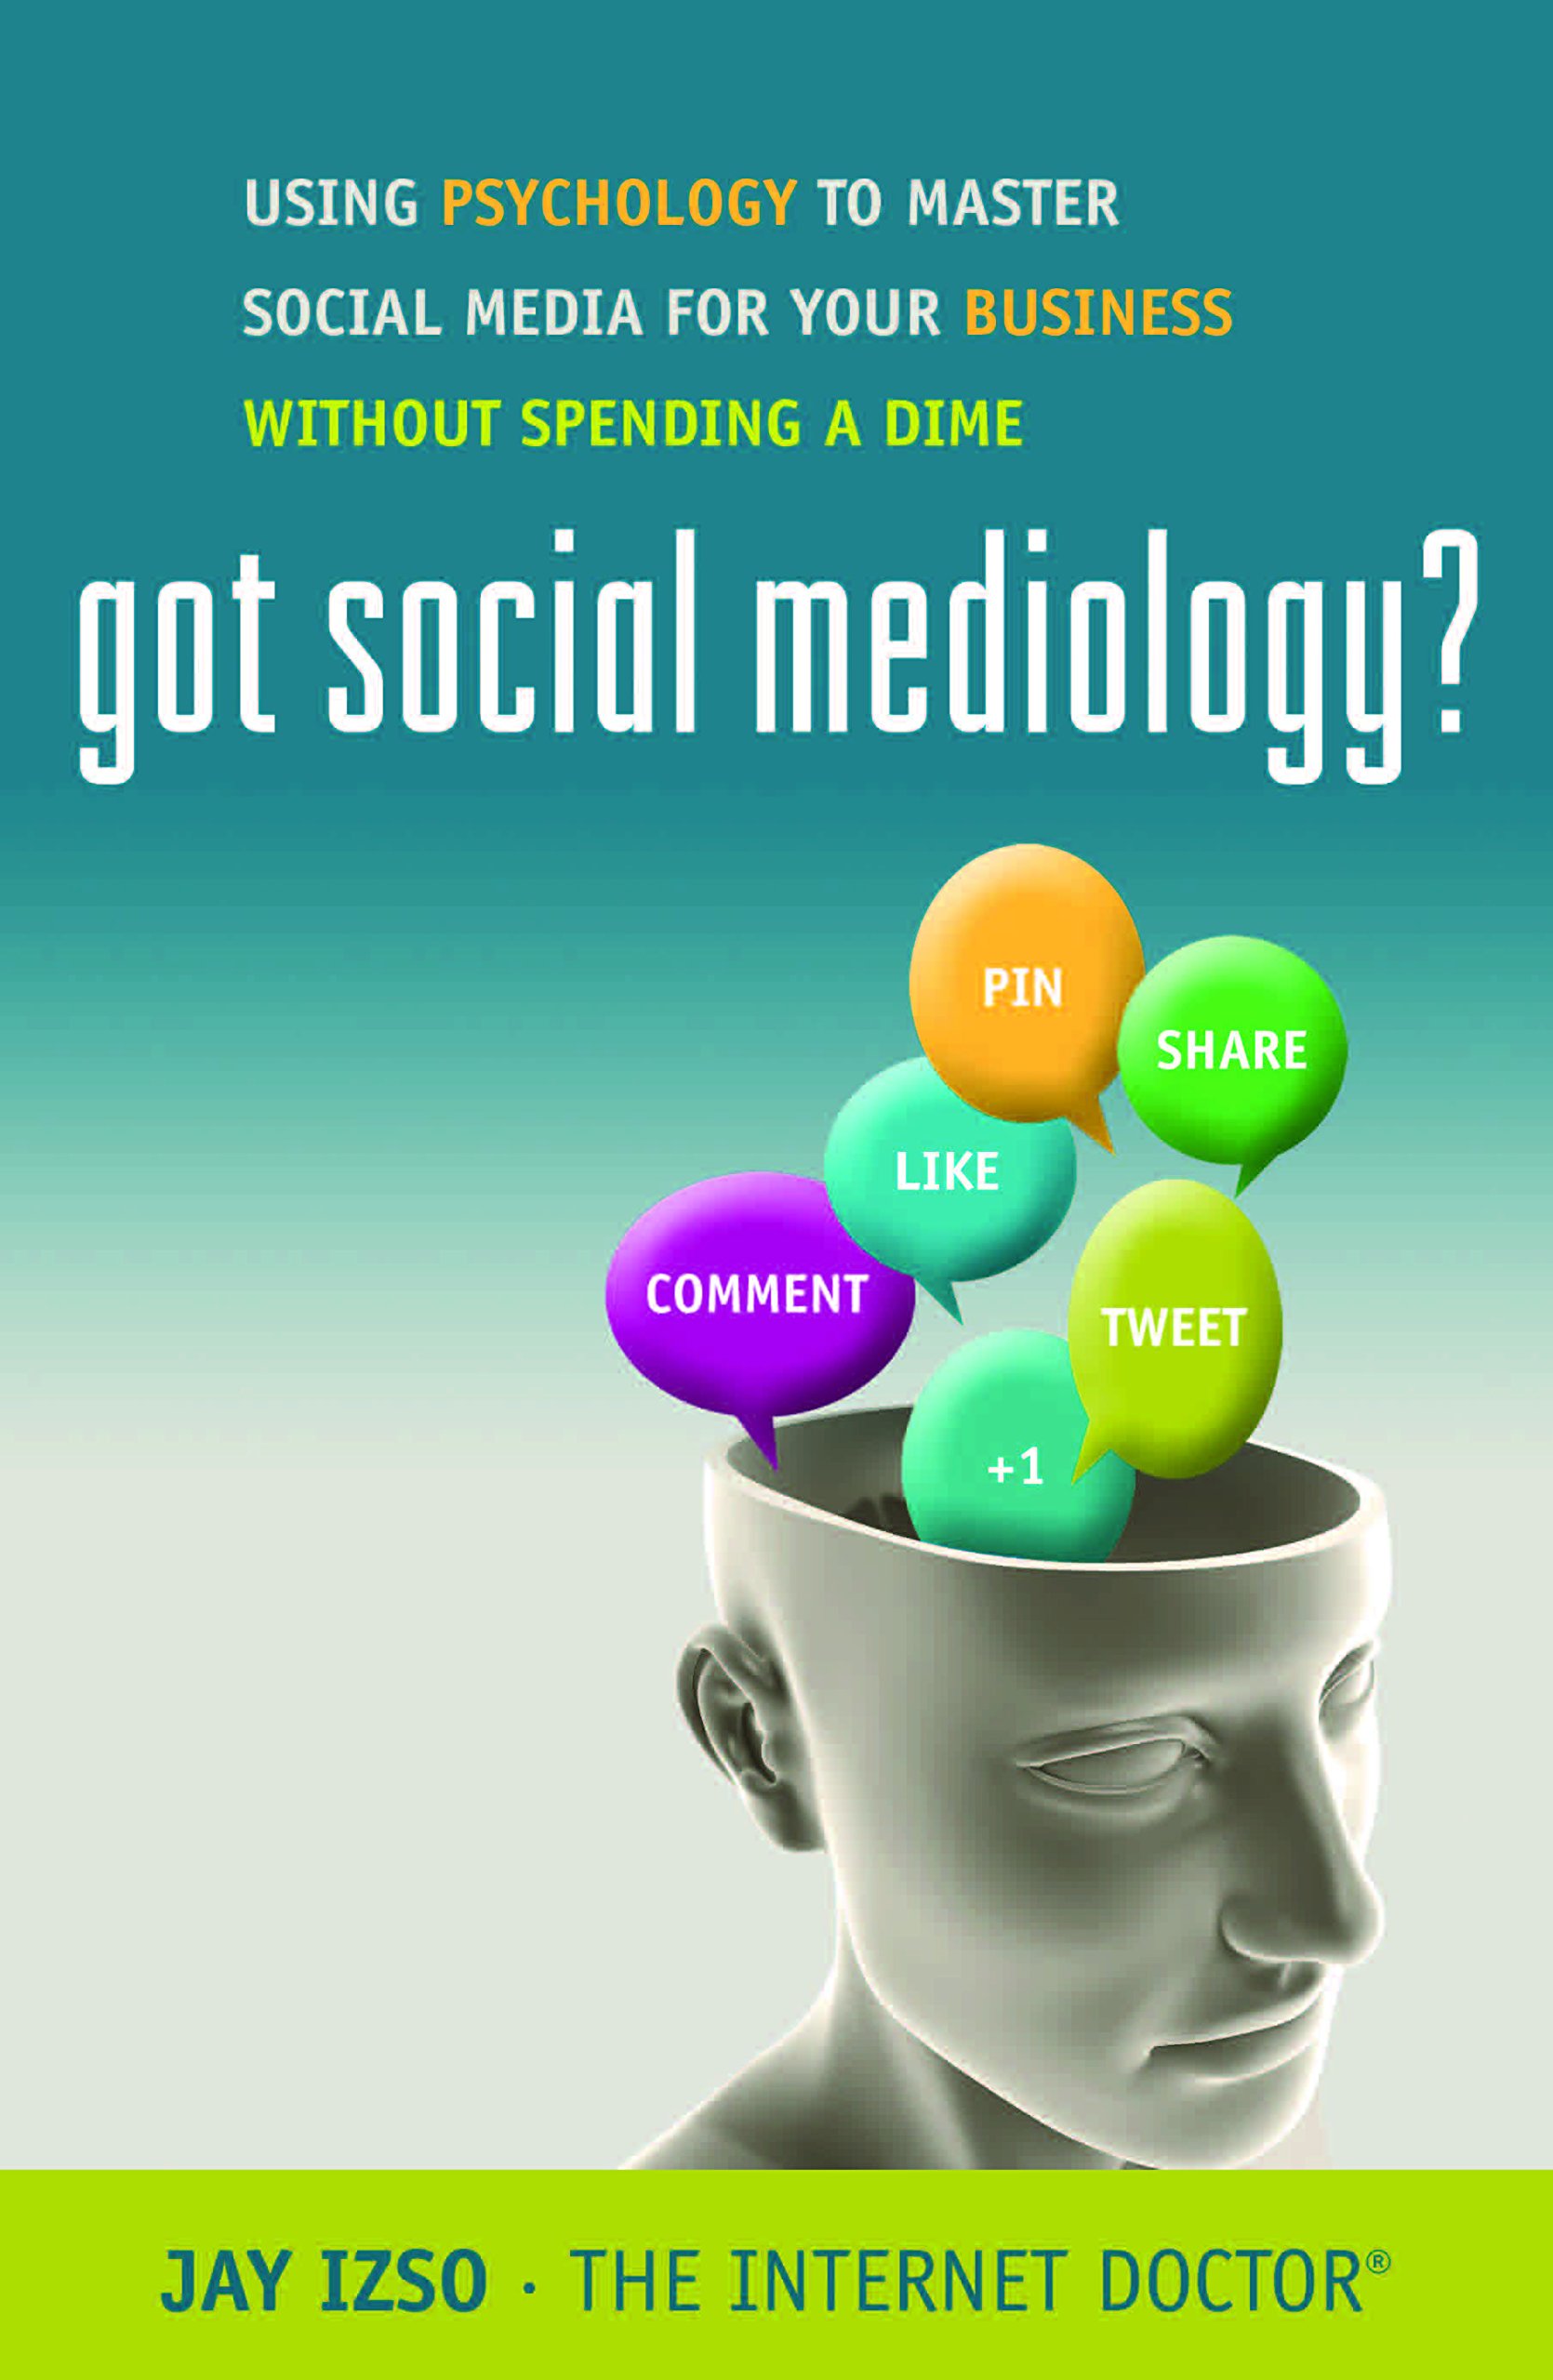 got-social-mediaology-jay-izso